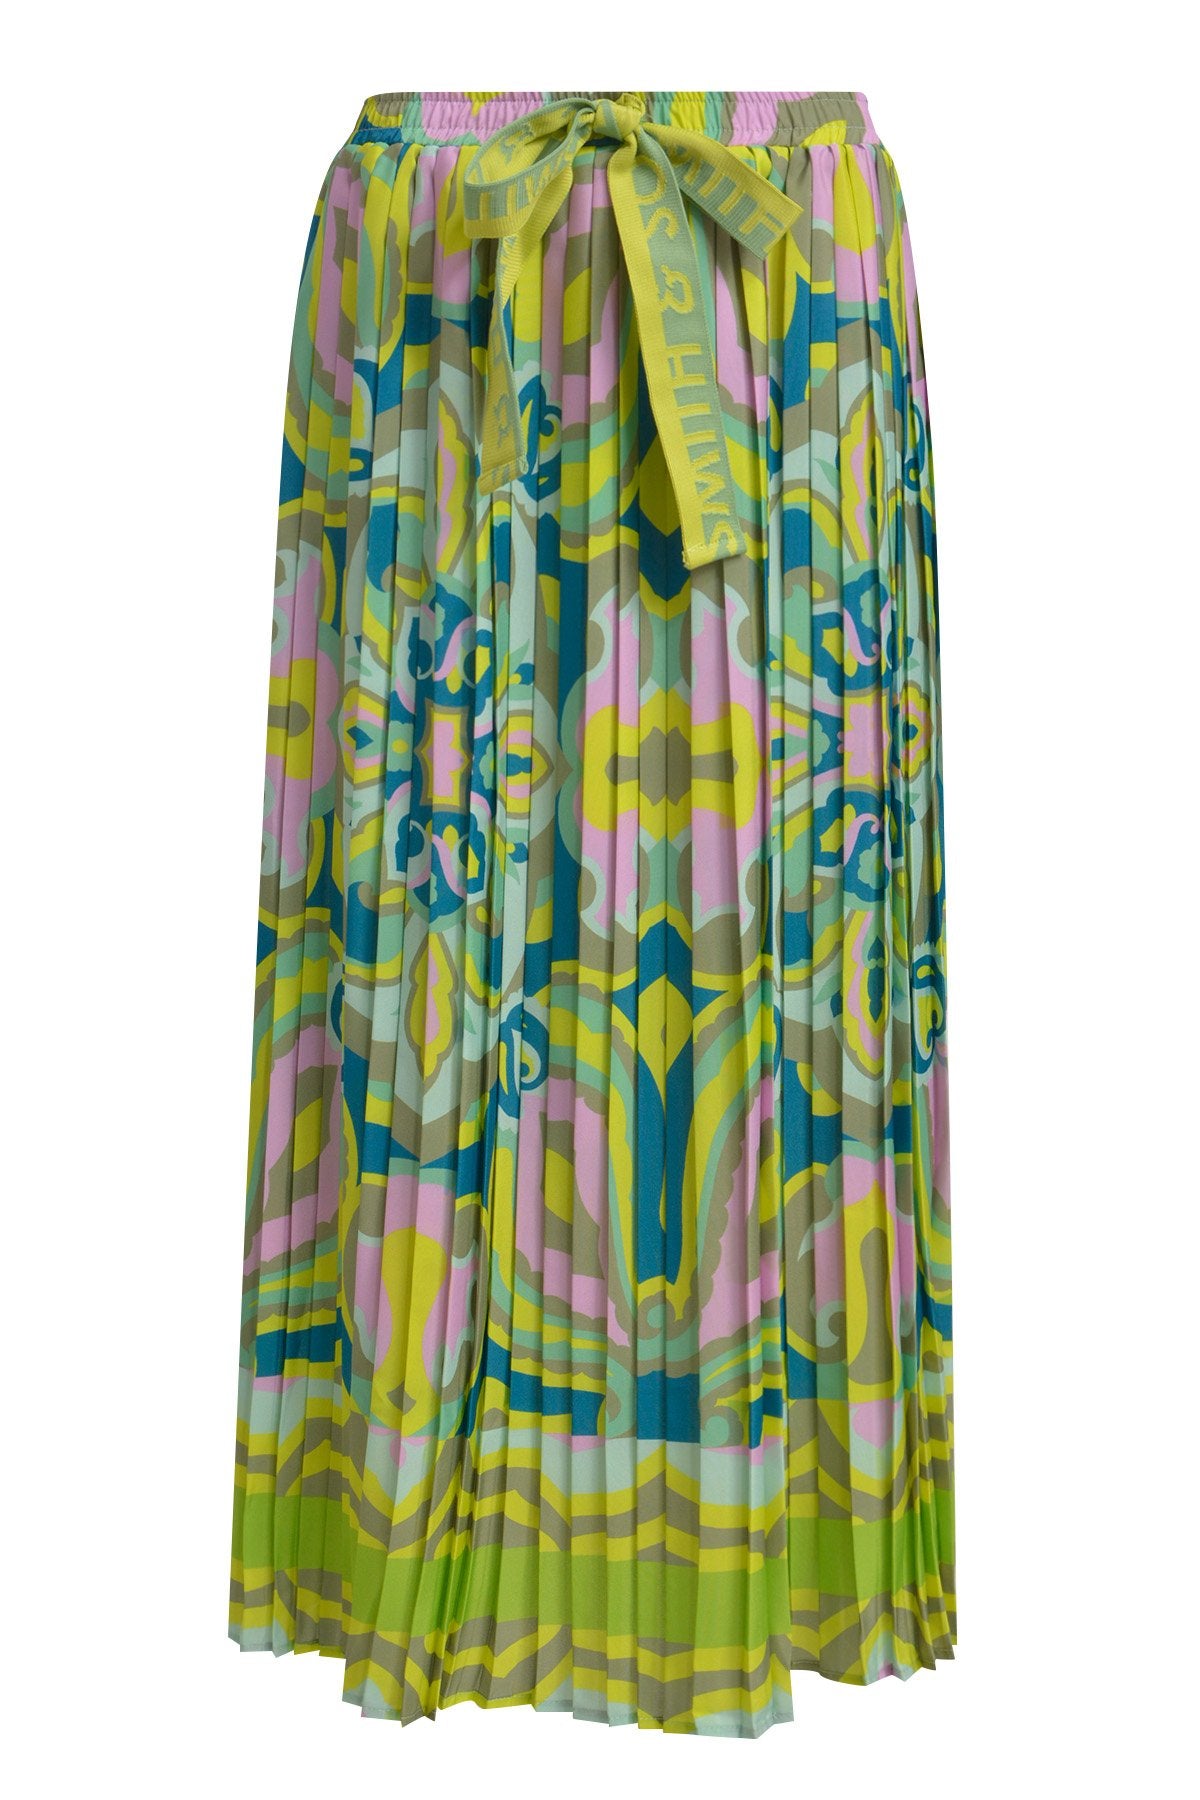 Plissee Skirt (Lime Print)